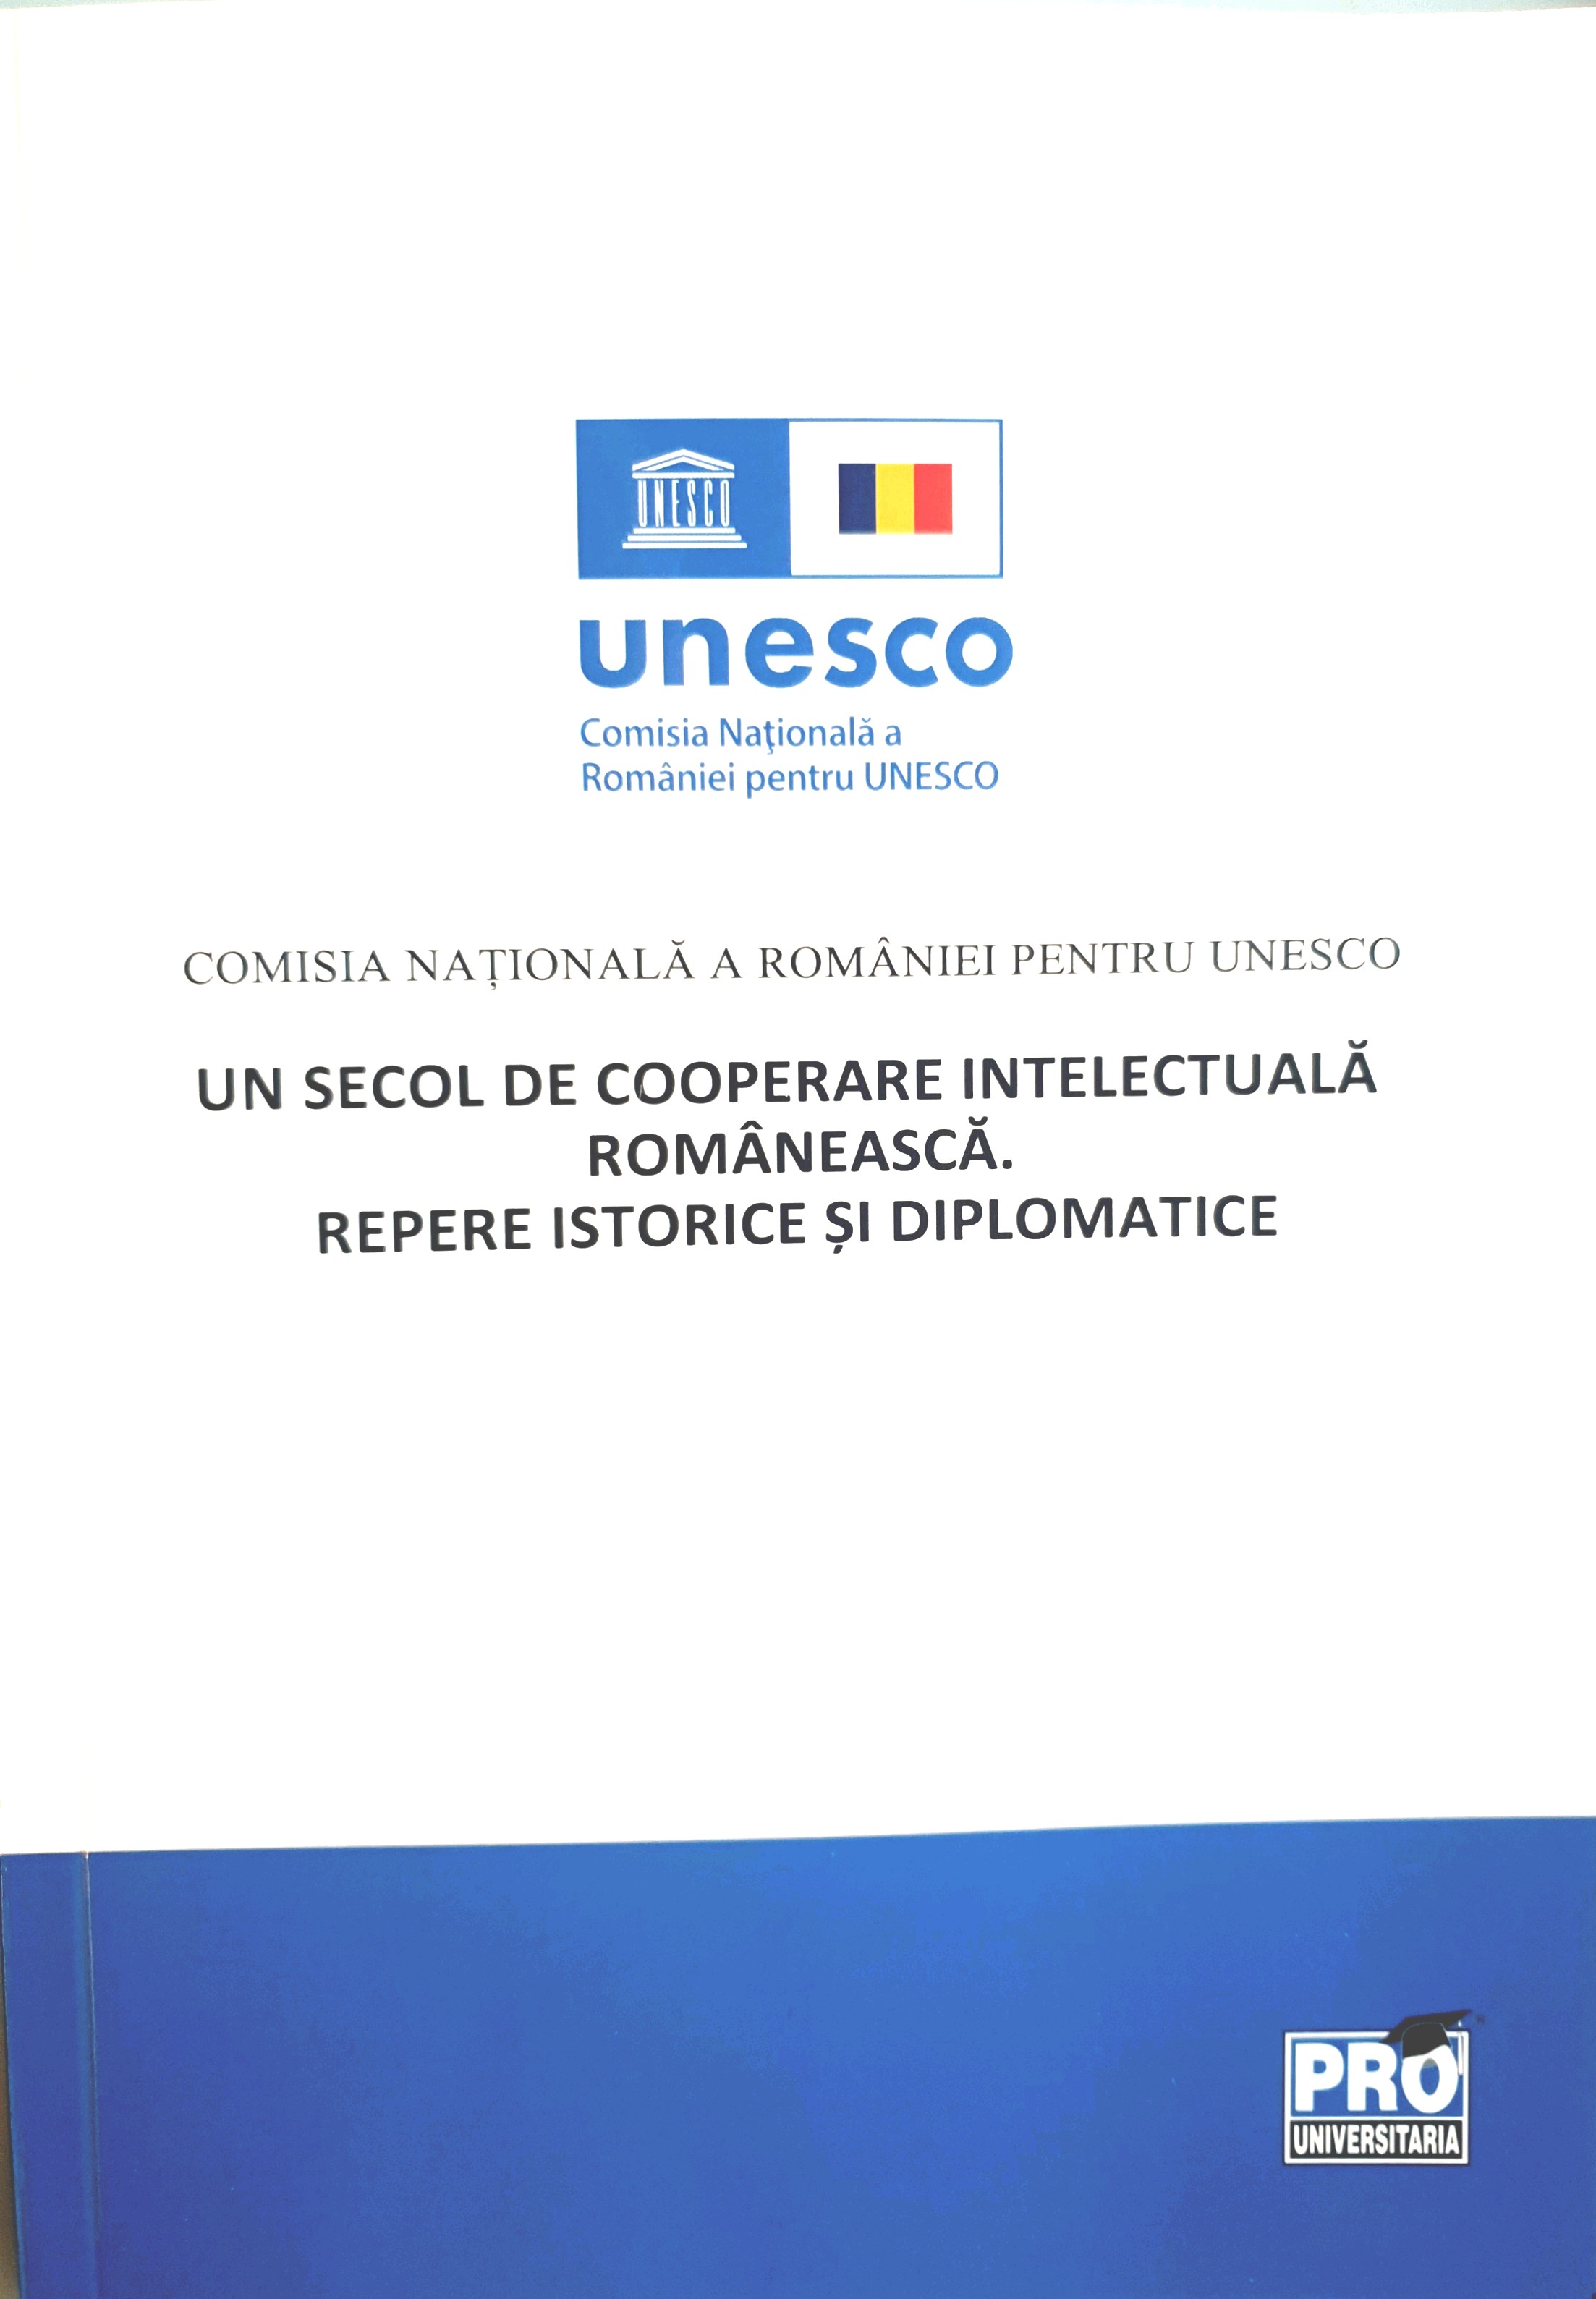 Revista UNESCO - Revista Un secol de cooperare intelectuală românească